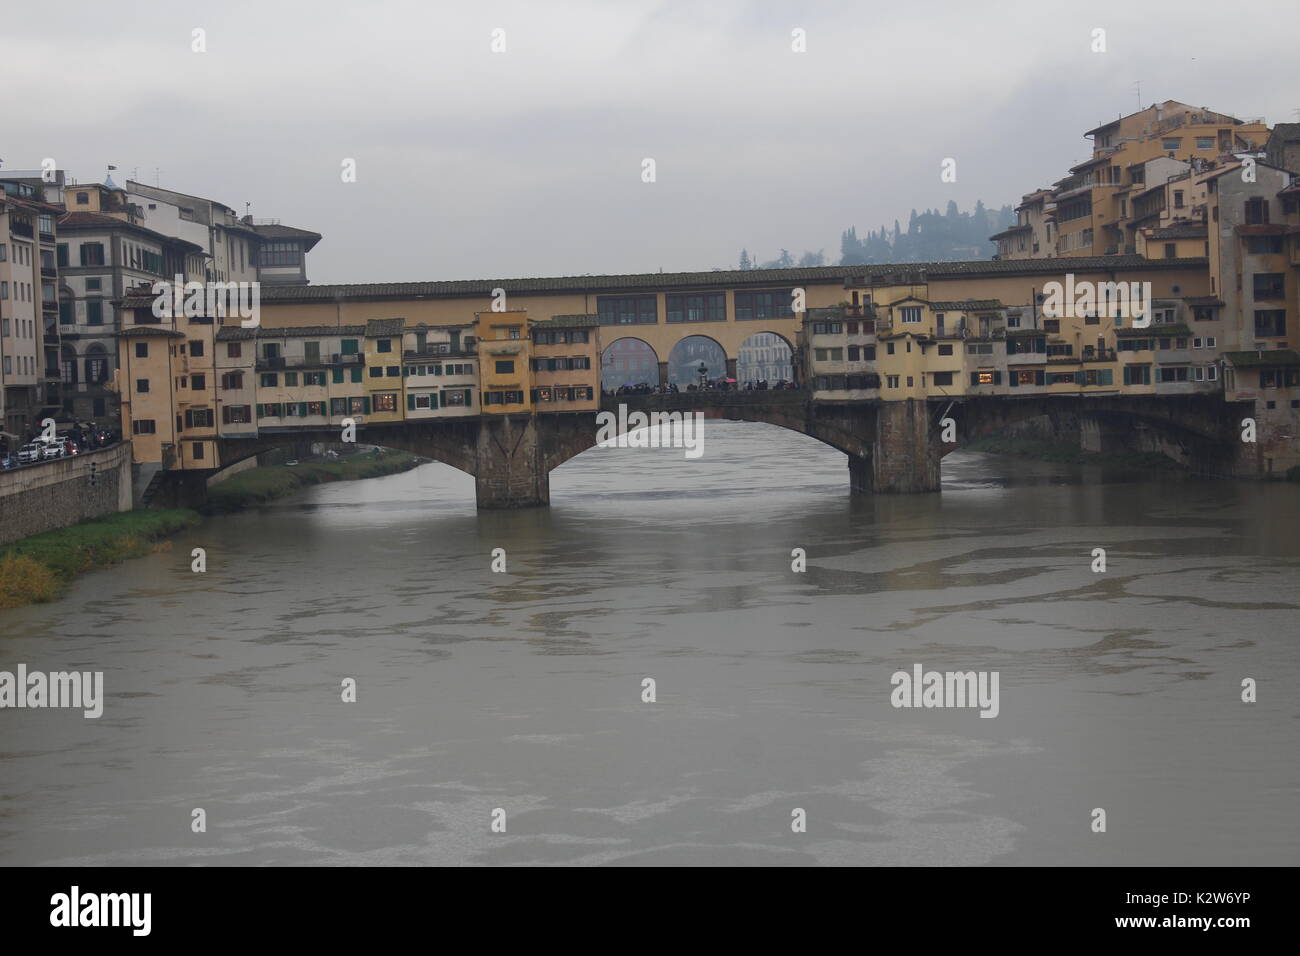 Alte Brücke, mittelalterliche Stein geschlossen - brüstungs Segmentbogen Brücke über den Fluss Arno in Florenz Stockfoto